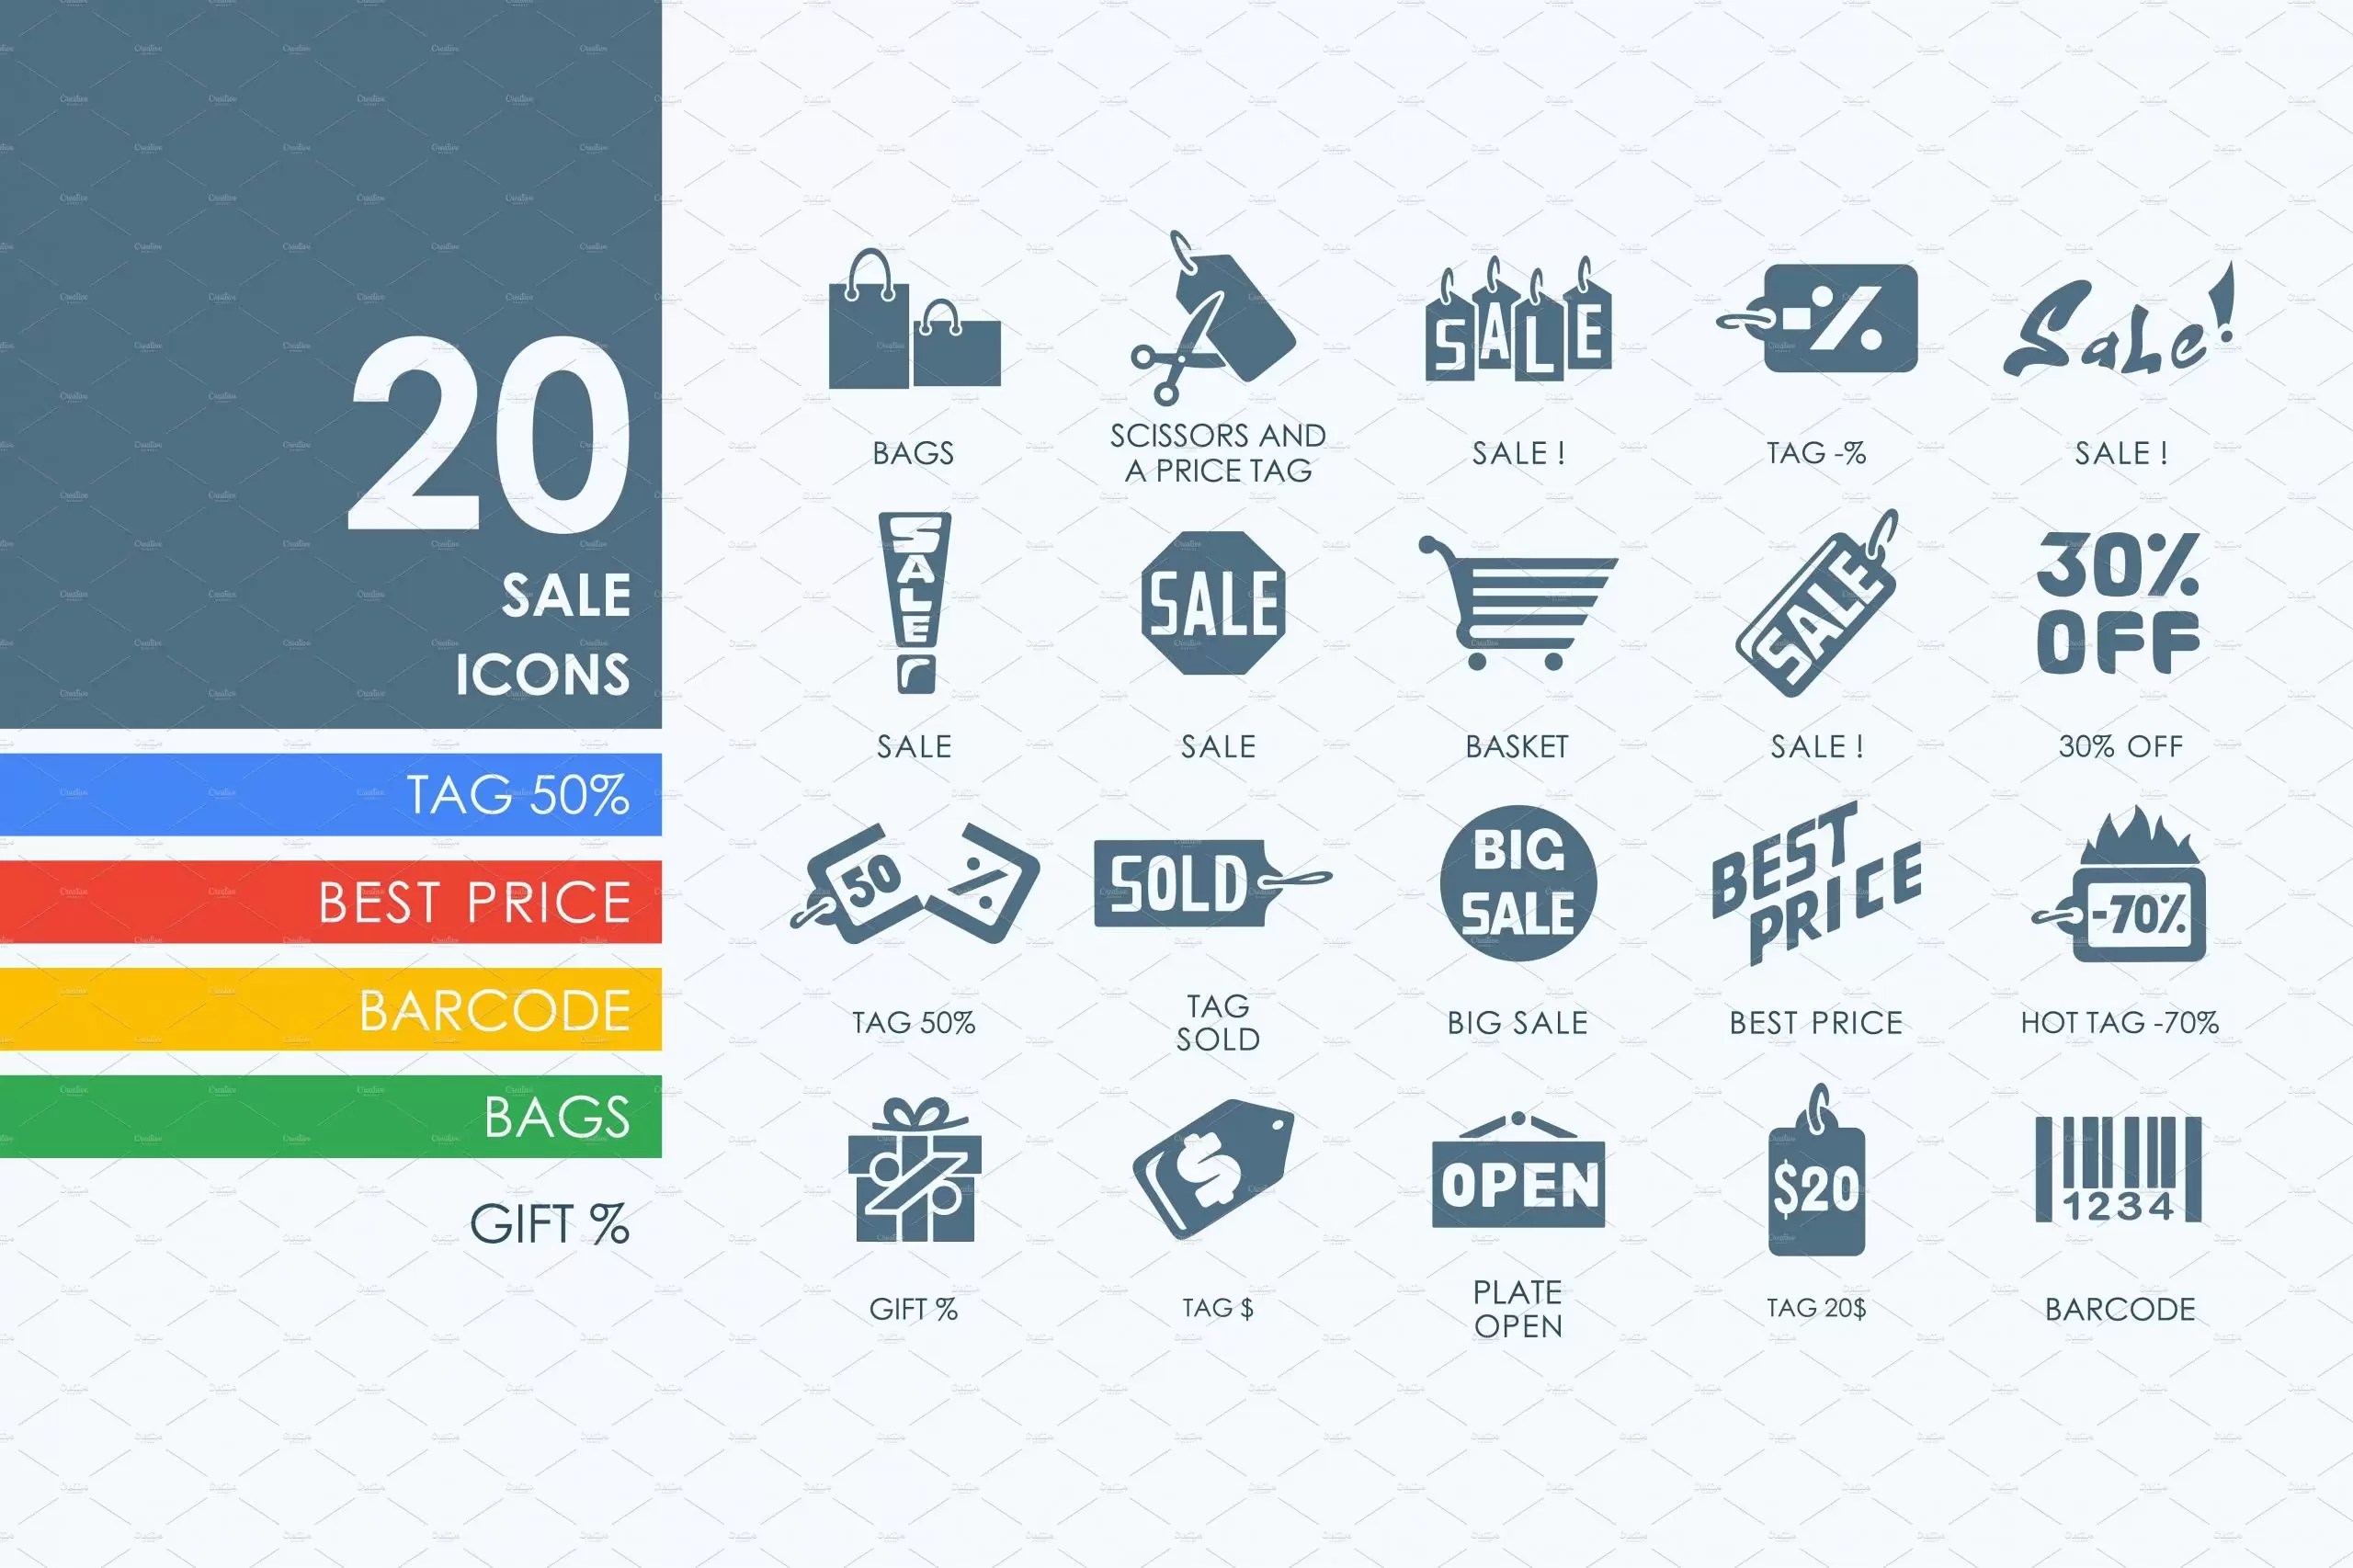 销售打折图标素材 20 sale icons插图